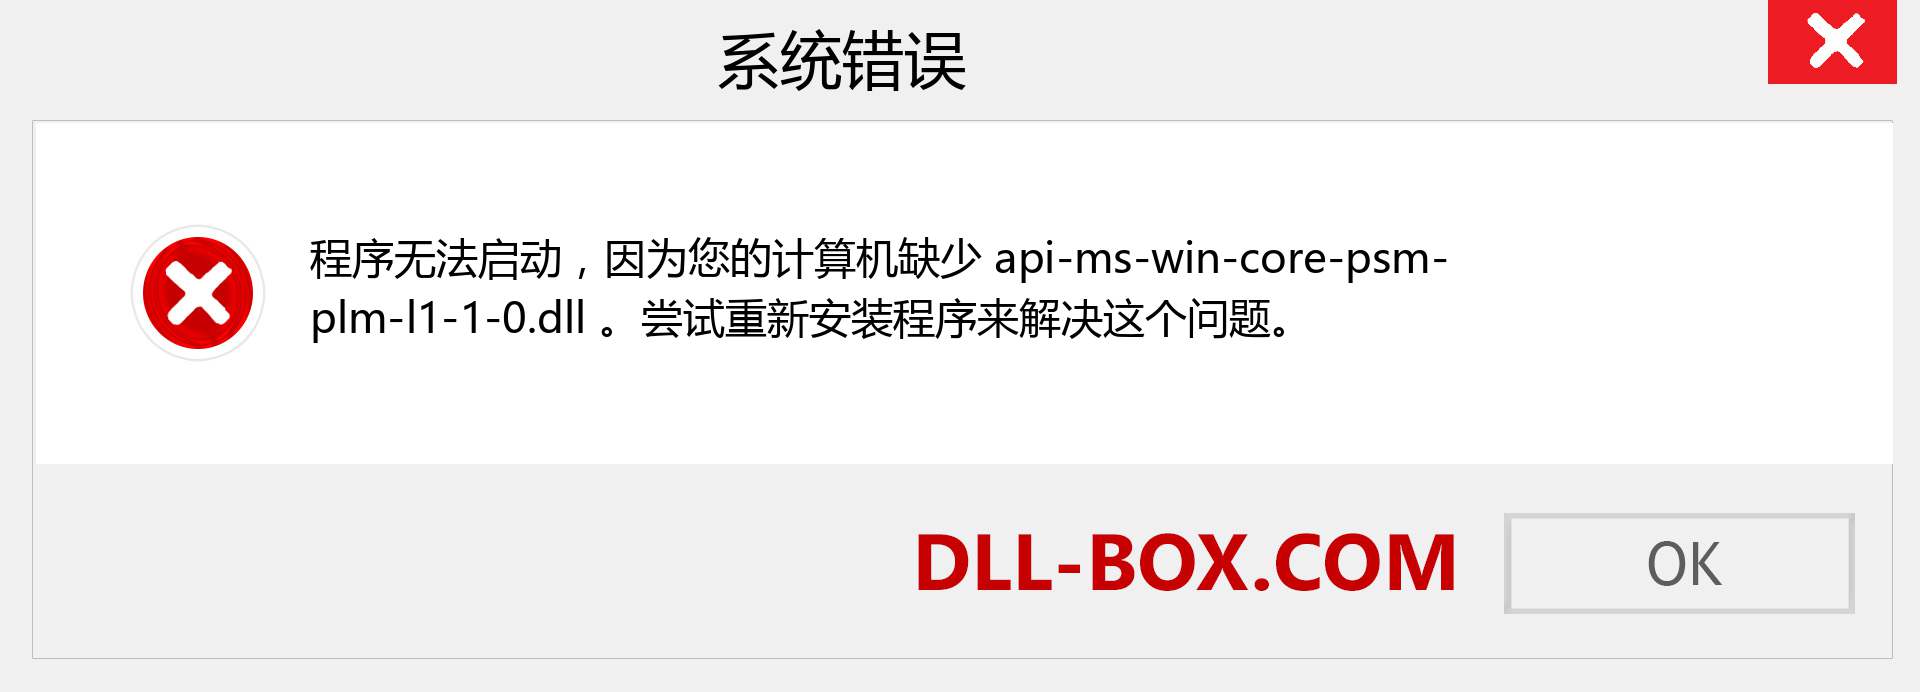 api-ms-win-core-psm-plm-l1-1-0.dll 文件丢失？。 适用于 Windows 7、8、10 的下载 - 修复 Windows、照片、图像上的 api-ms-win-core-psm-plm-l1-1-0 dll 丢失错误